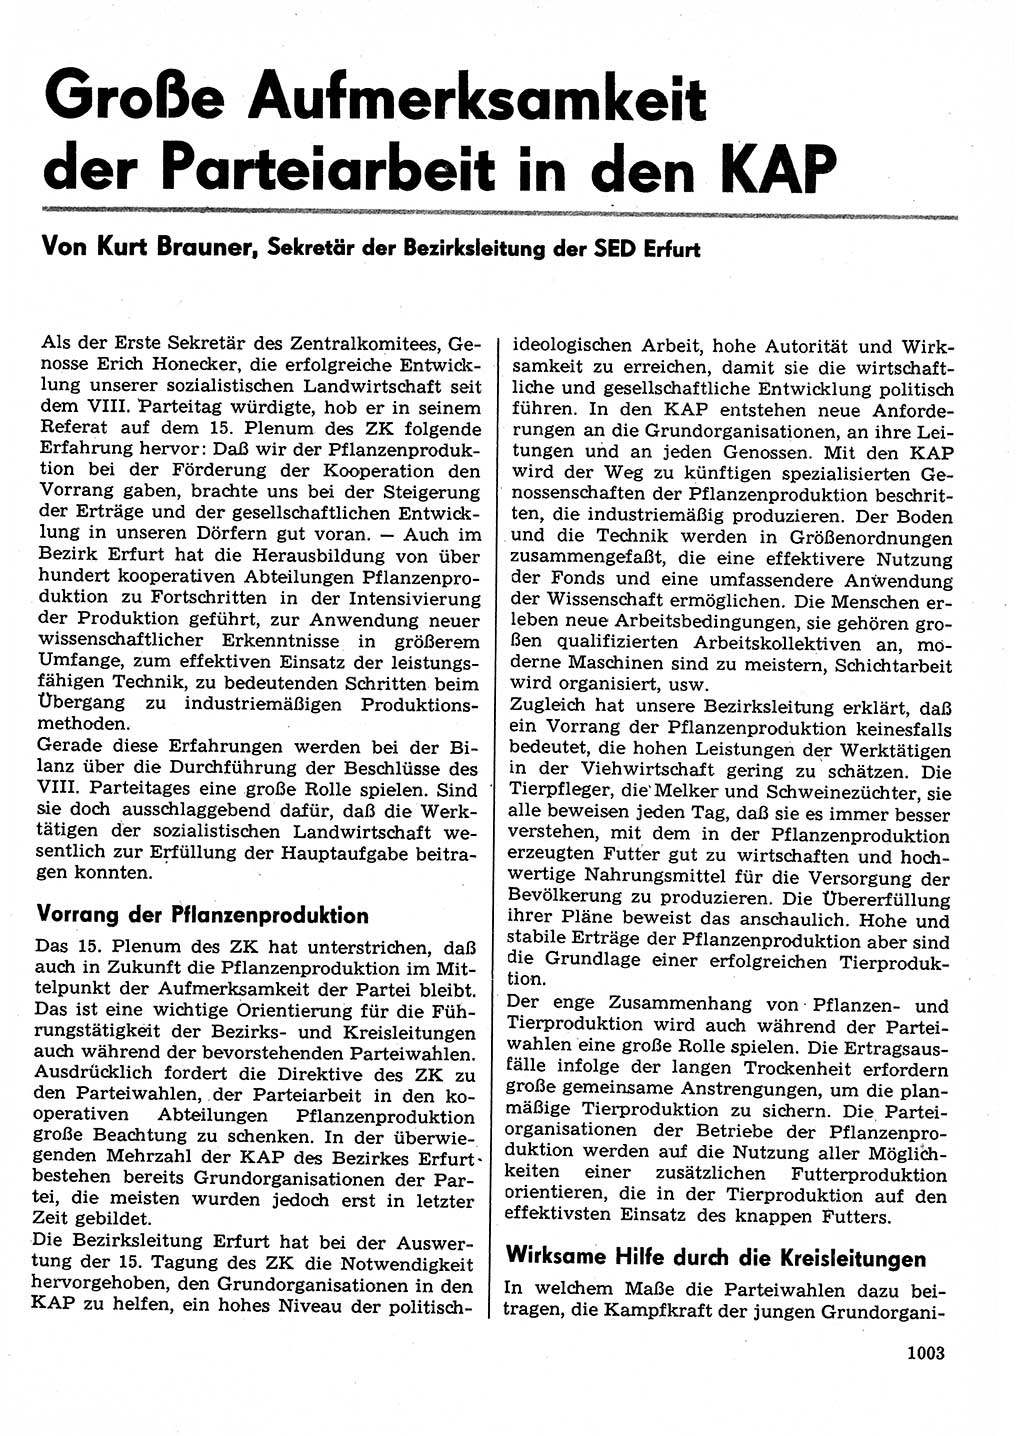 Neuer Weg (NW), Organ des Zentralkomitees (ZK) der SED (Sozialistische Einheitspartei Deutschlands) für Fragen des Parteilebens, 30. Jahrgang [Deutsche Demokratische Republik (DDR)] 1975, Seite 1003 (NW ZK SED DDR 1975, S. 1003)